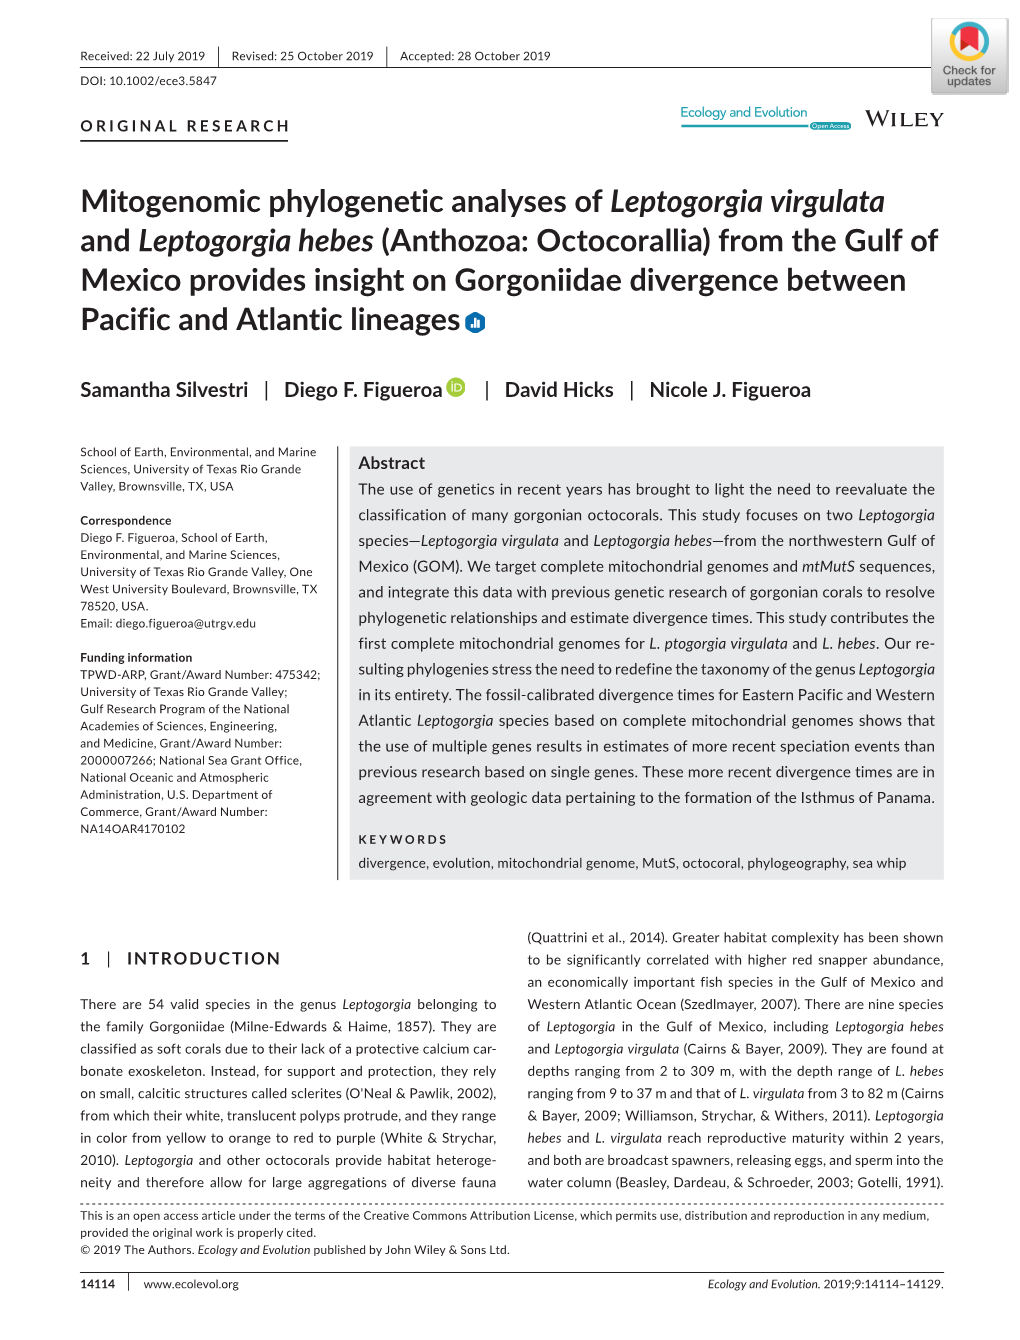 Mitogenomic Phylogenetic Analyses of Leptogorgia Virgulata And